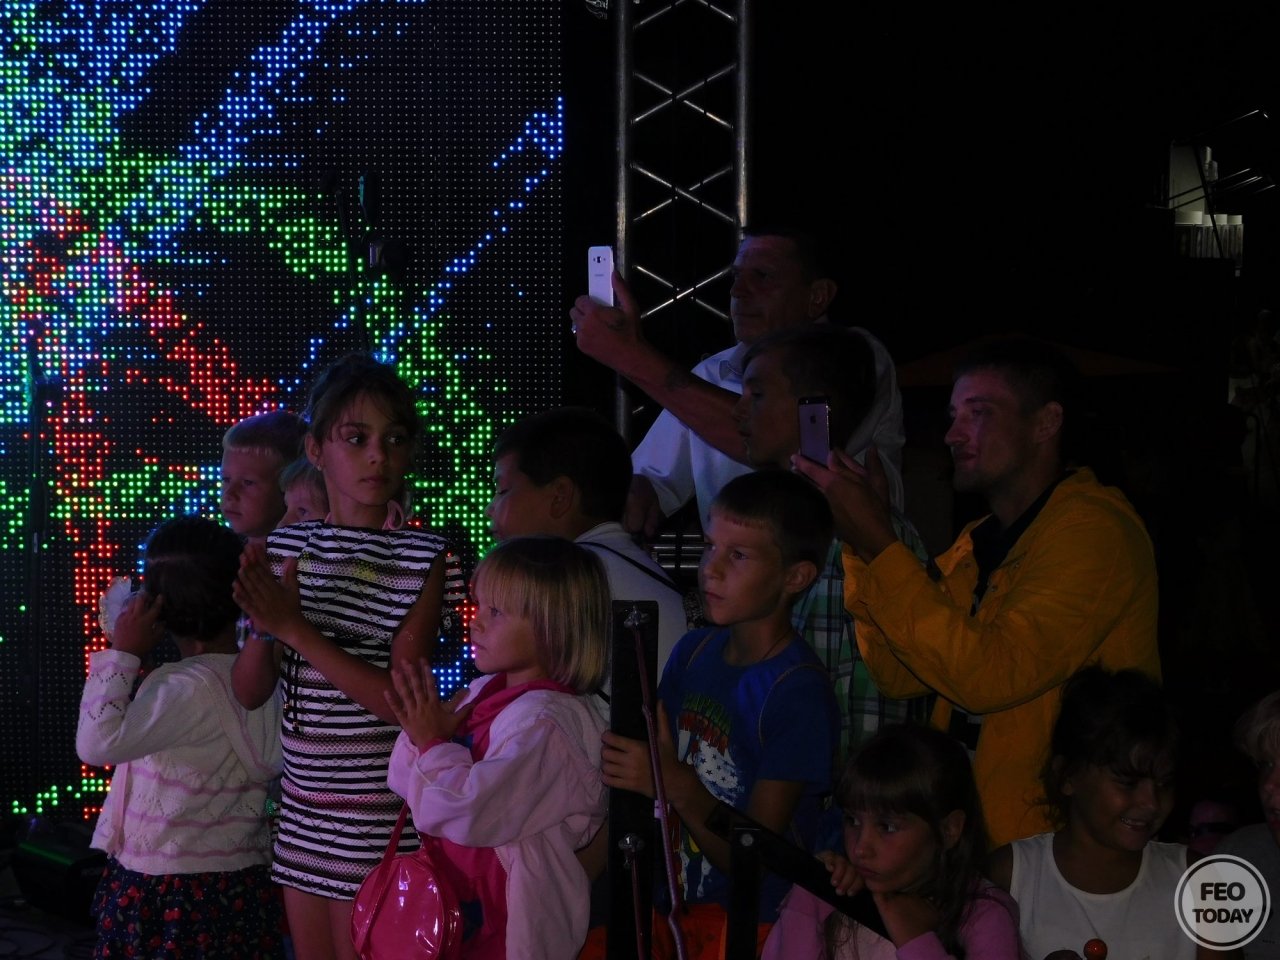 Фото концерта на День города 2017 и юбилей Айвазовского в Феодосии #2218